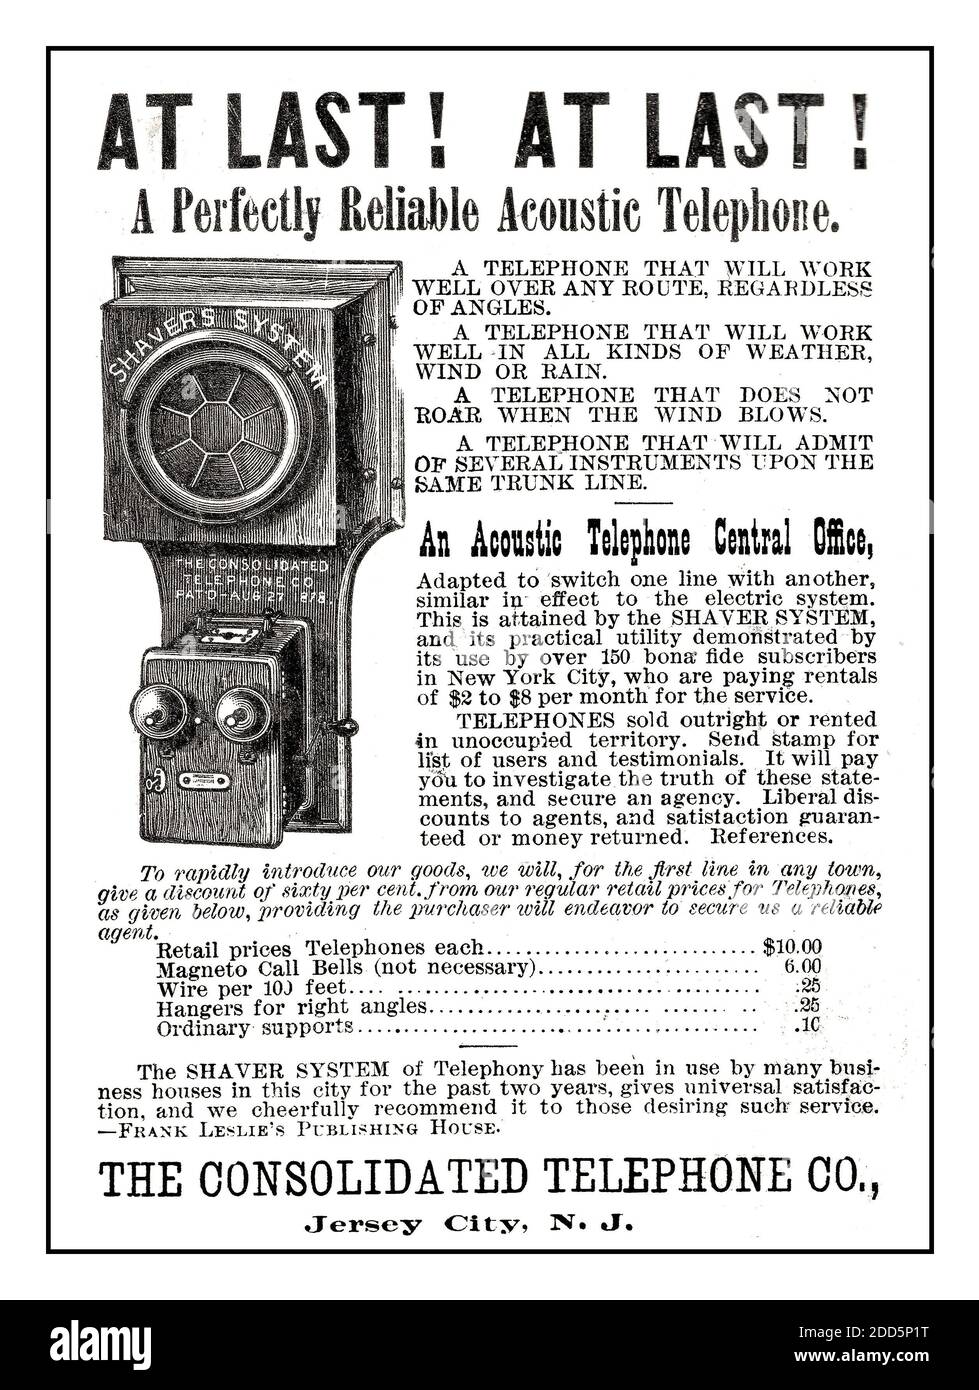 Storico primo Acoustic Telefono 1800's pubblicità stampa Consolidated Telephone Co. Ad 1886. FINALMENTE ! FINALMENTE ! Un telefono acustico perfettamente affidabile Foto Stock